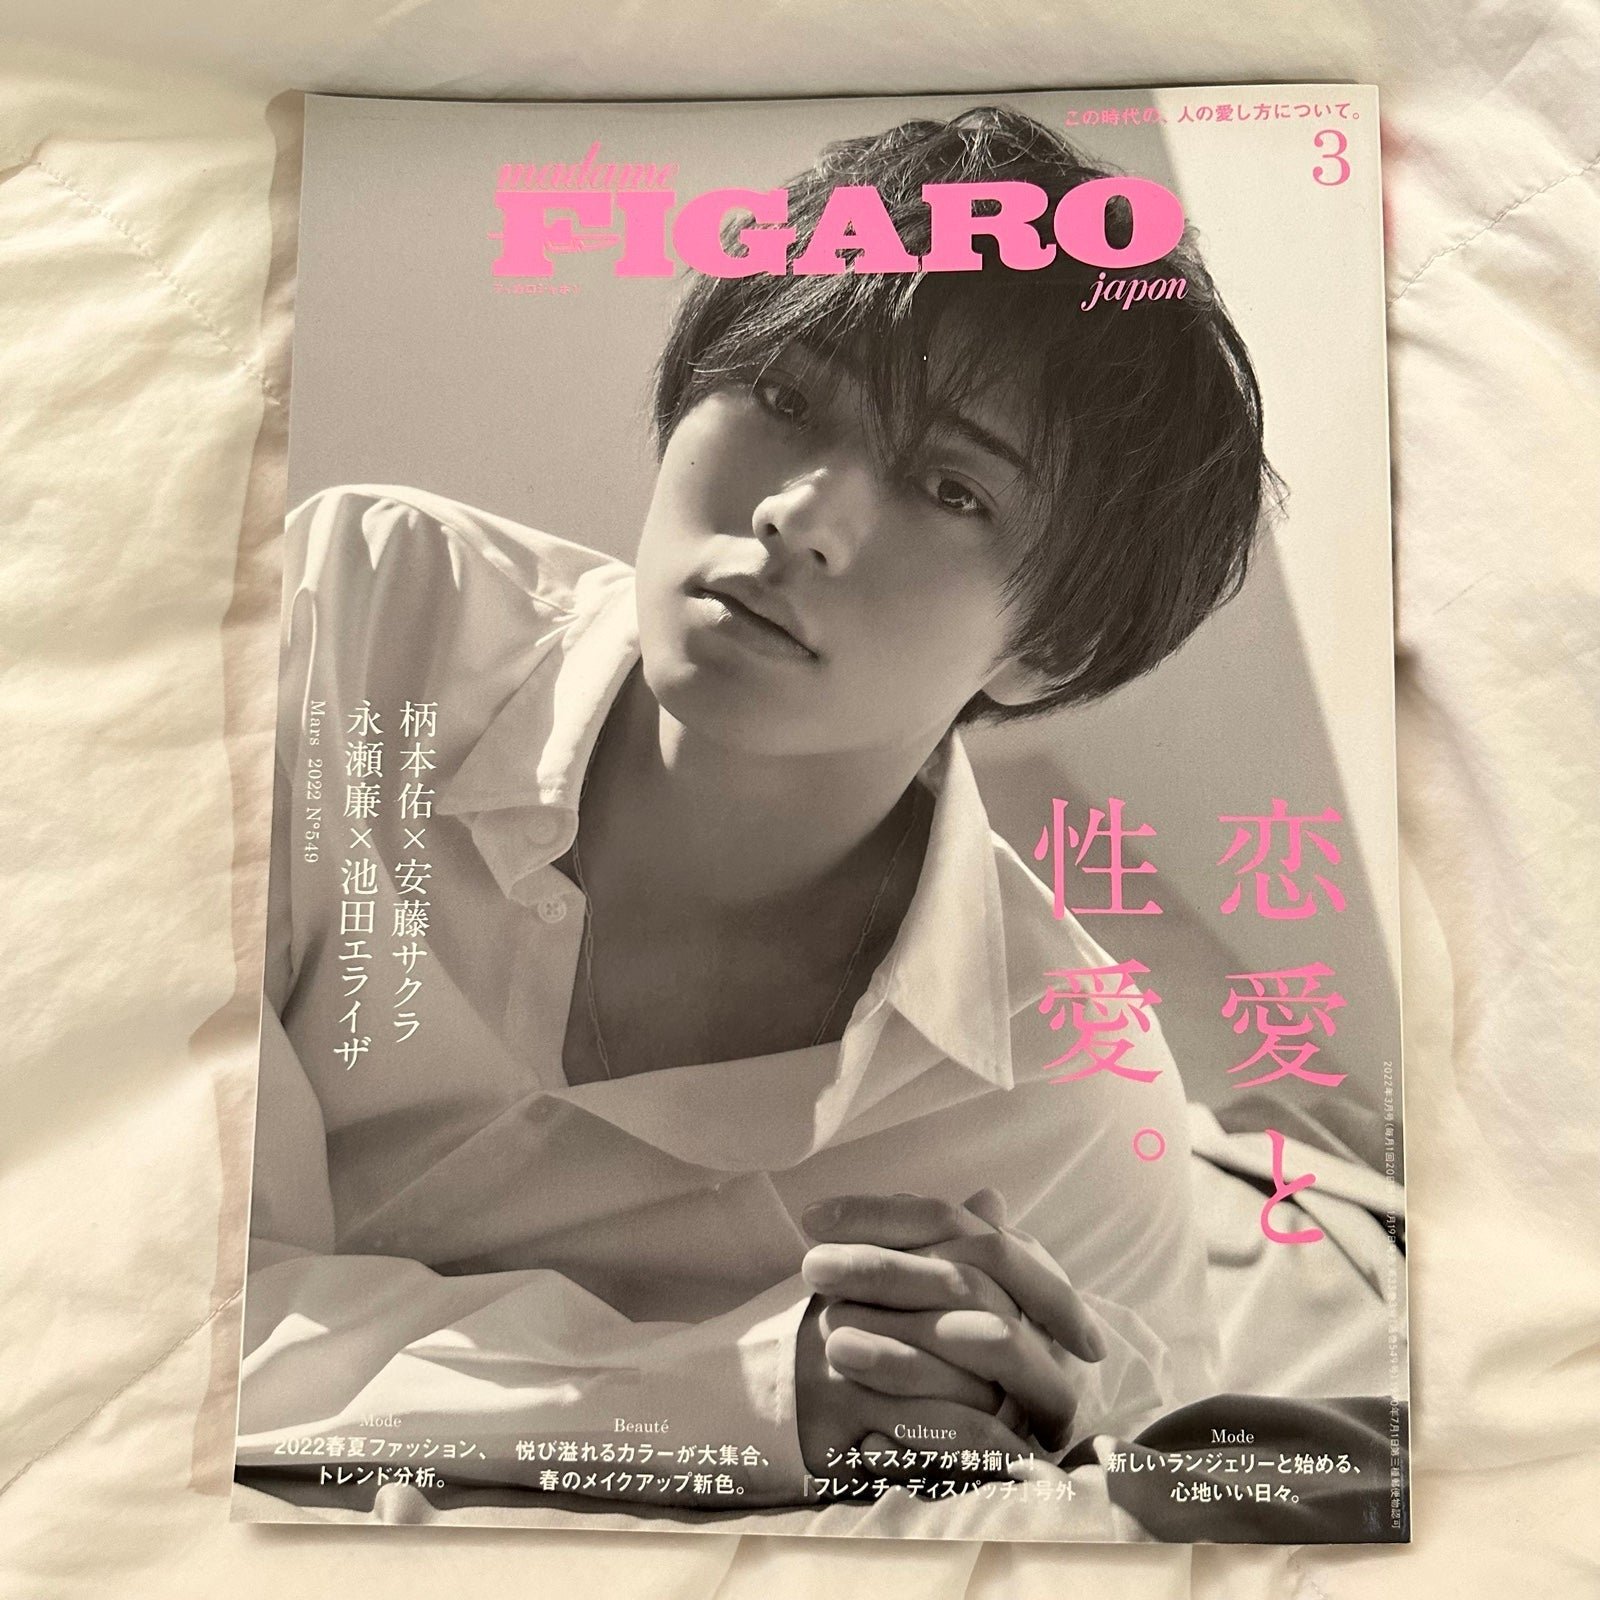 Nagase Ren “Madame FIGARO Japon” Magazine March 2022 Issue iPhS1rdb3